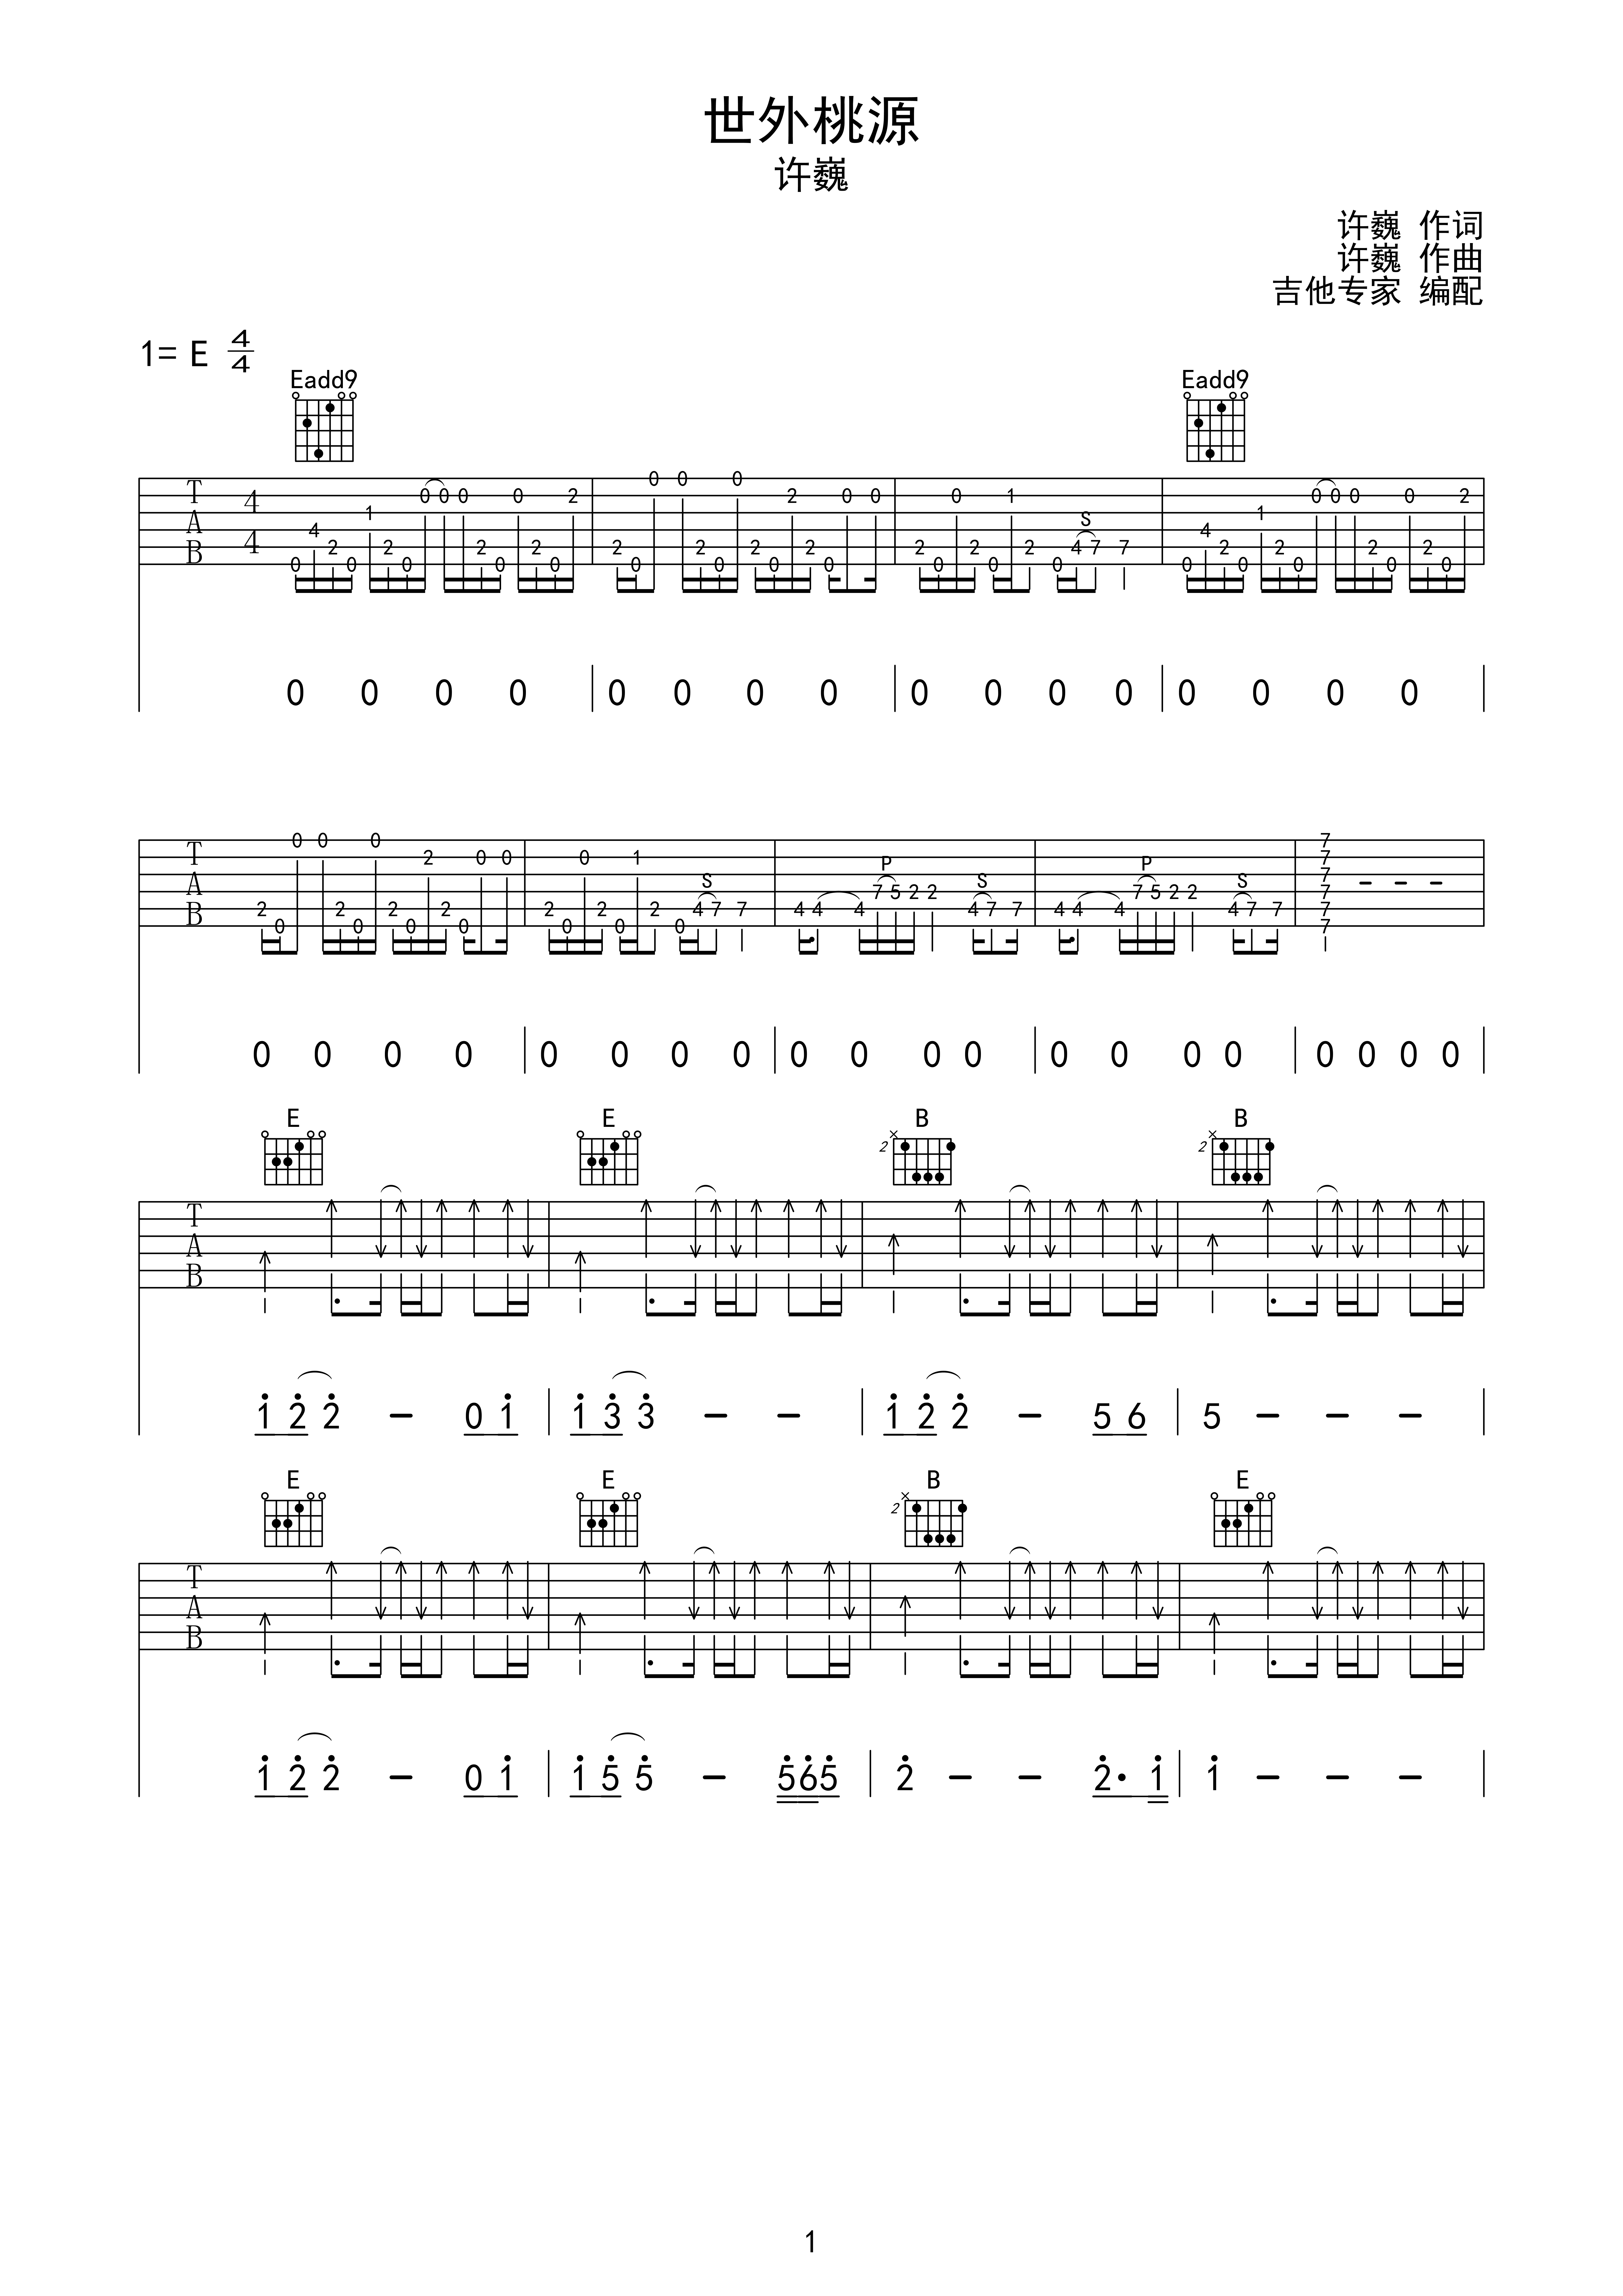 许巍《世外桃源》吉他谱(E调)-Guitar Music Score - GTP吉他谱